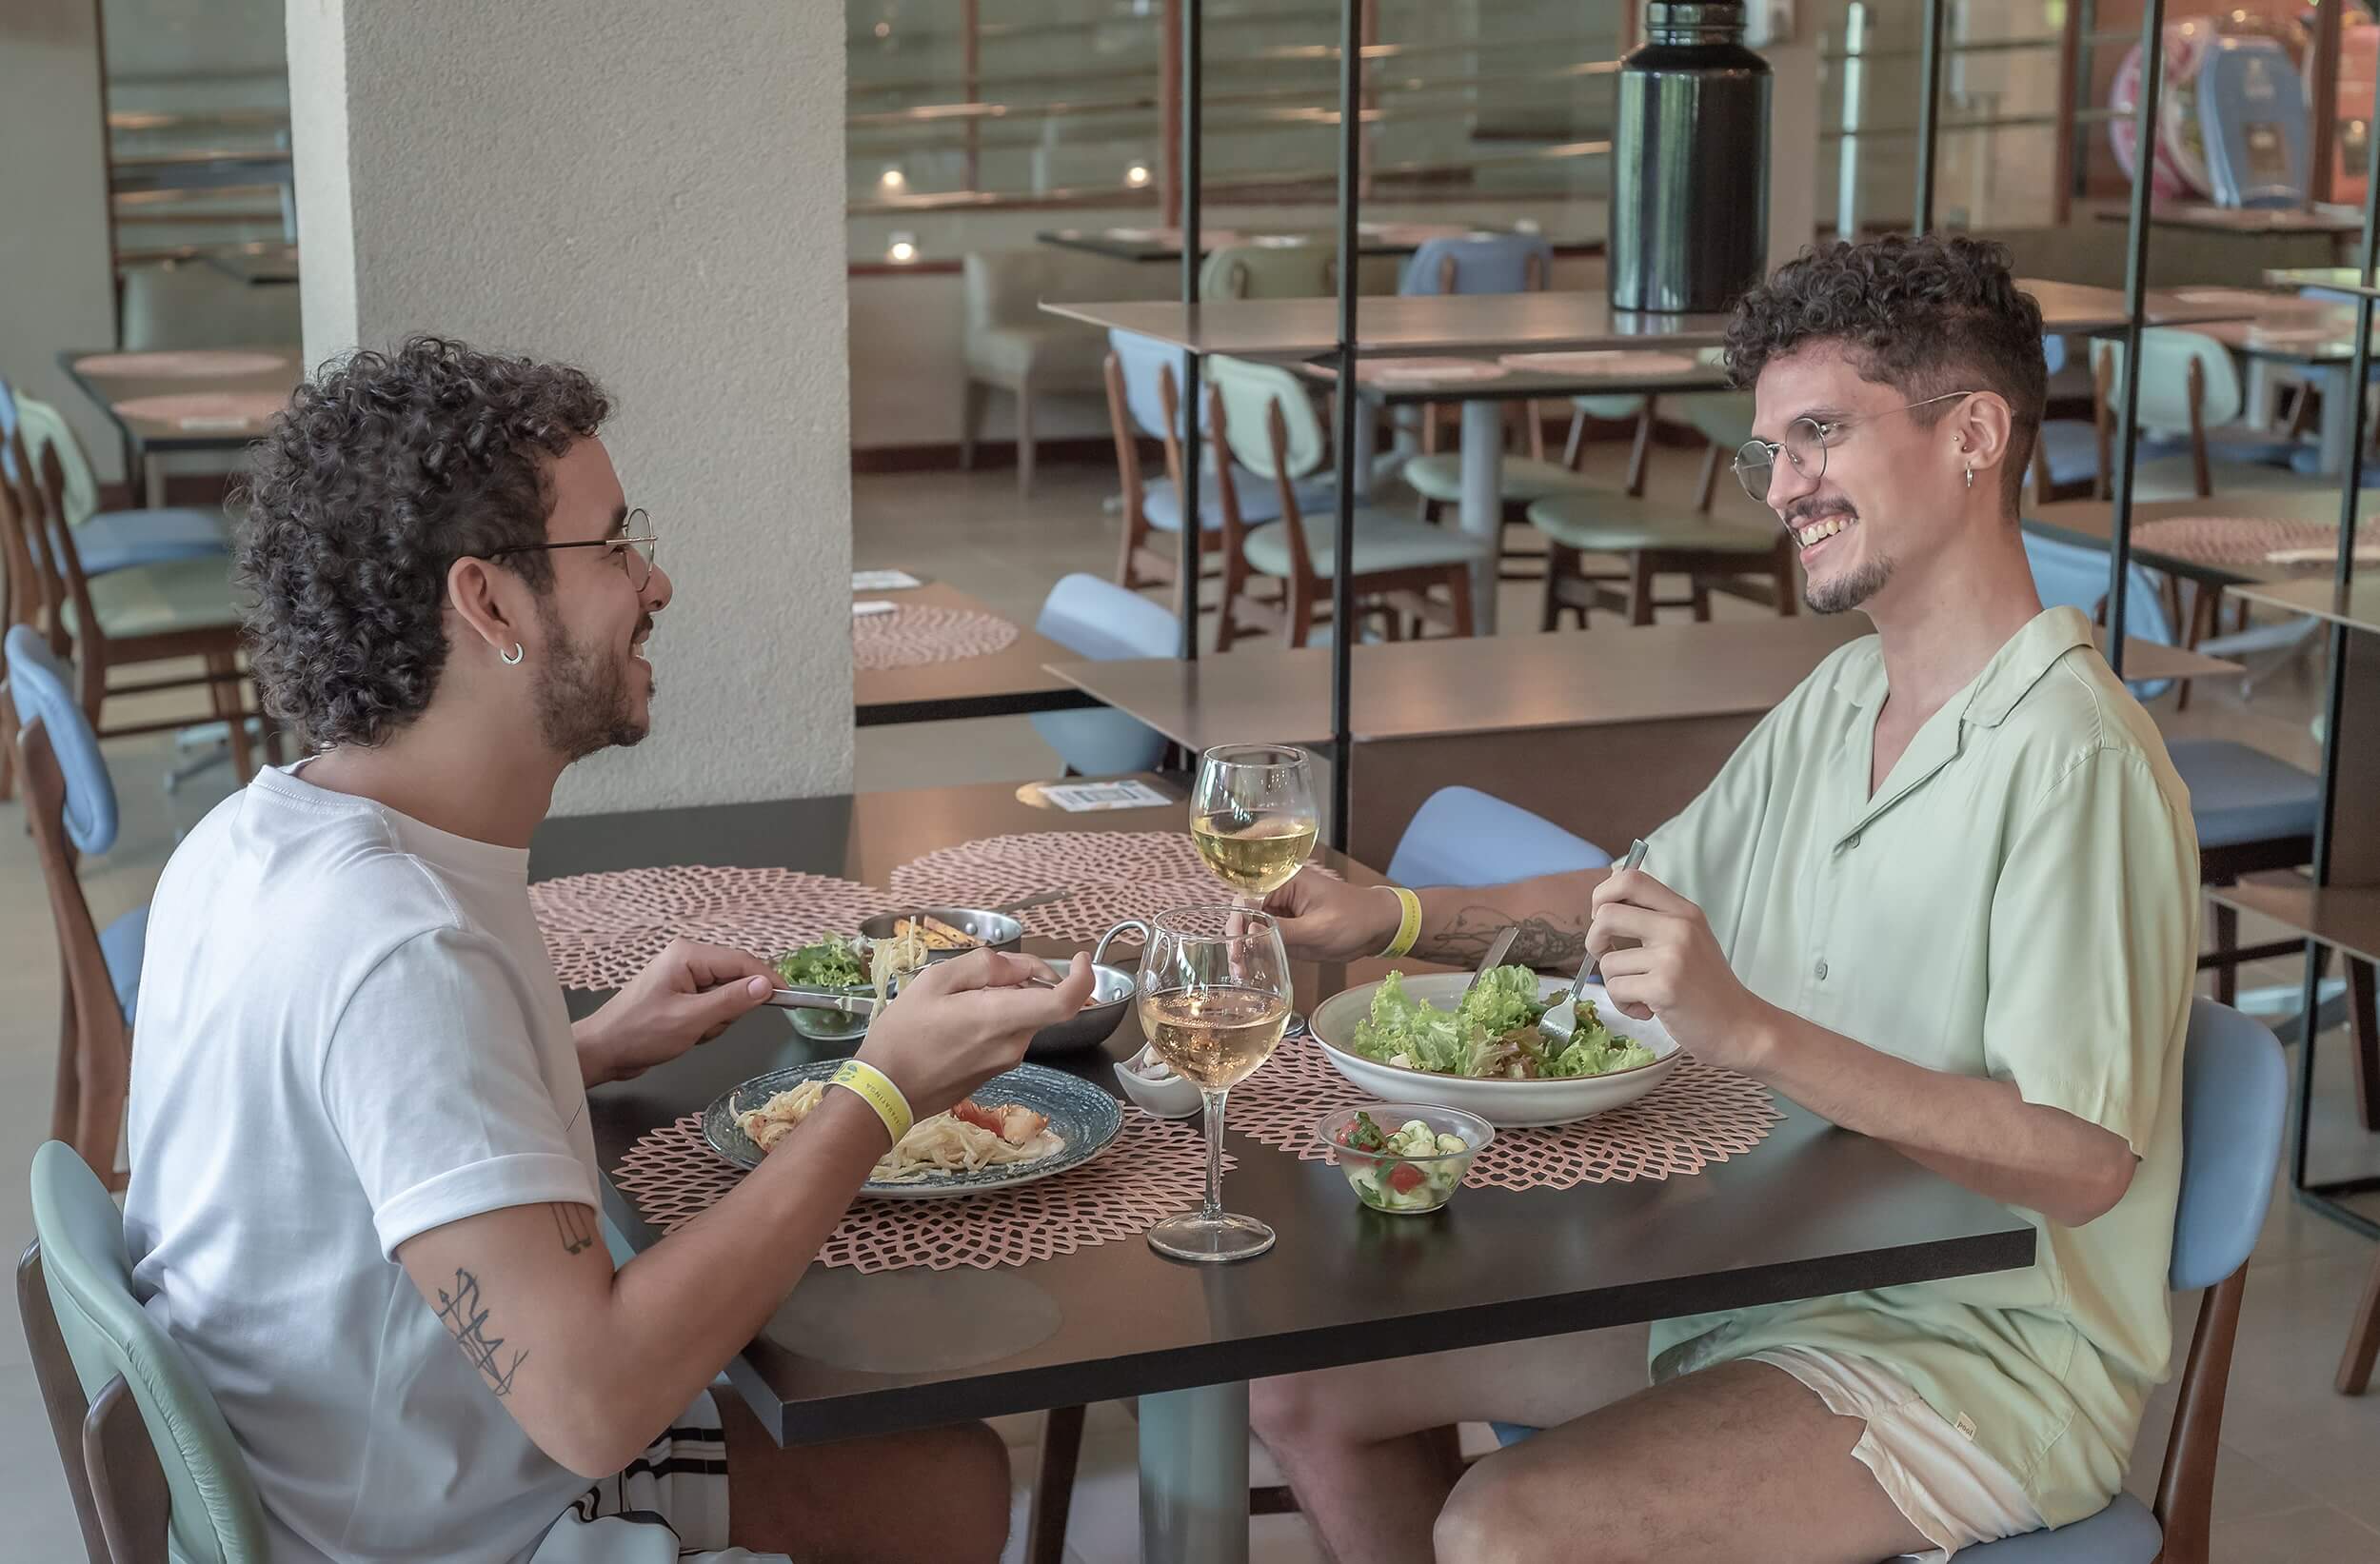 Dois homens em um restaurante, desfrutando de uma refeição. Ambos de cabelos cacheados e um de camiseta branca, o outro de camisa clara. É um ambiente moderno, e há taças de vinho na mesa.